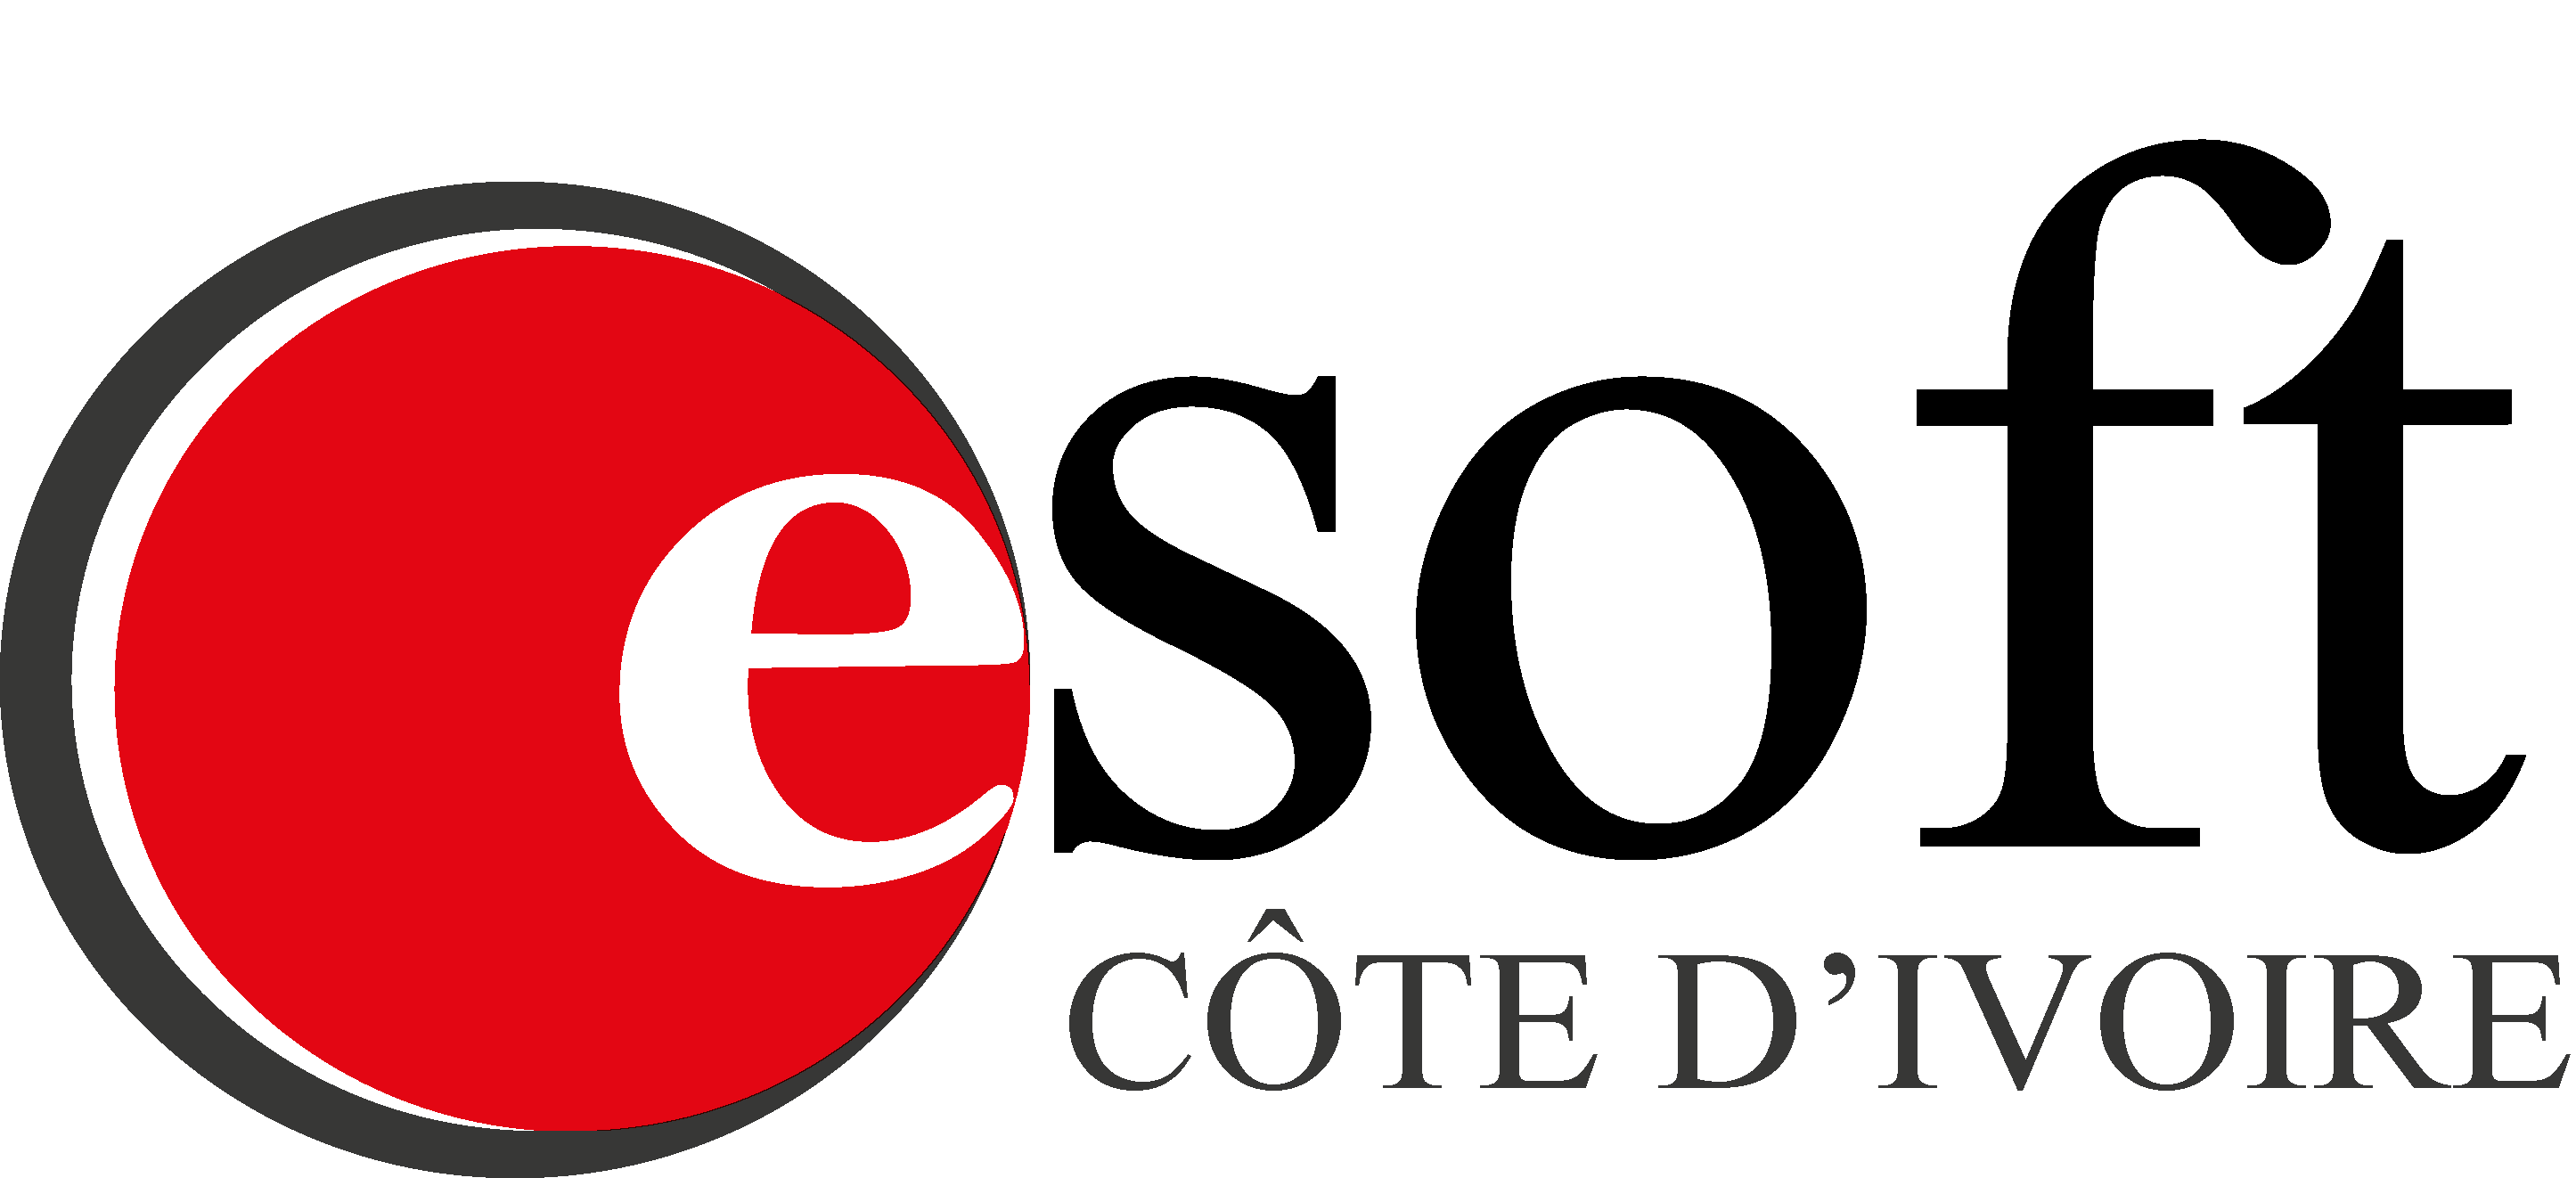 Esoft Cote d'Ivoire